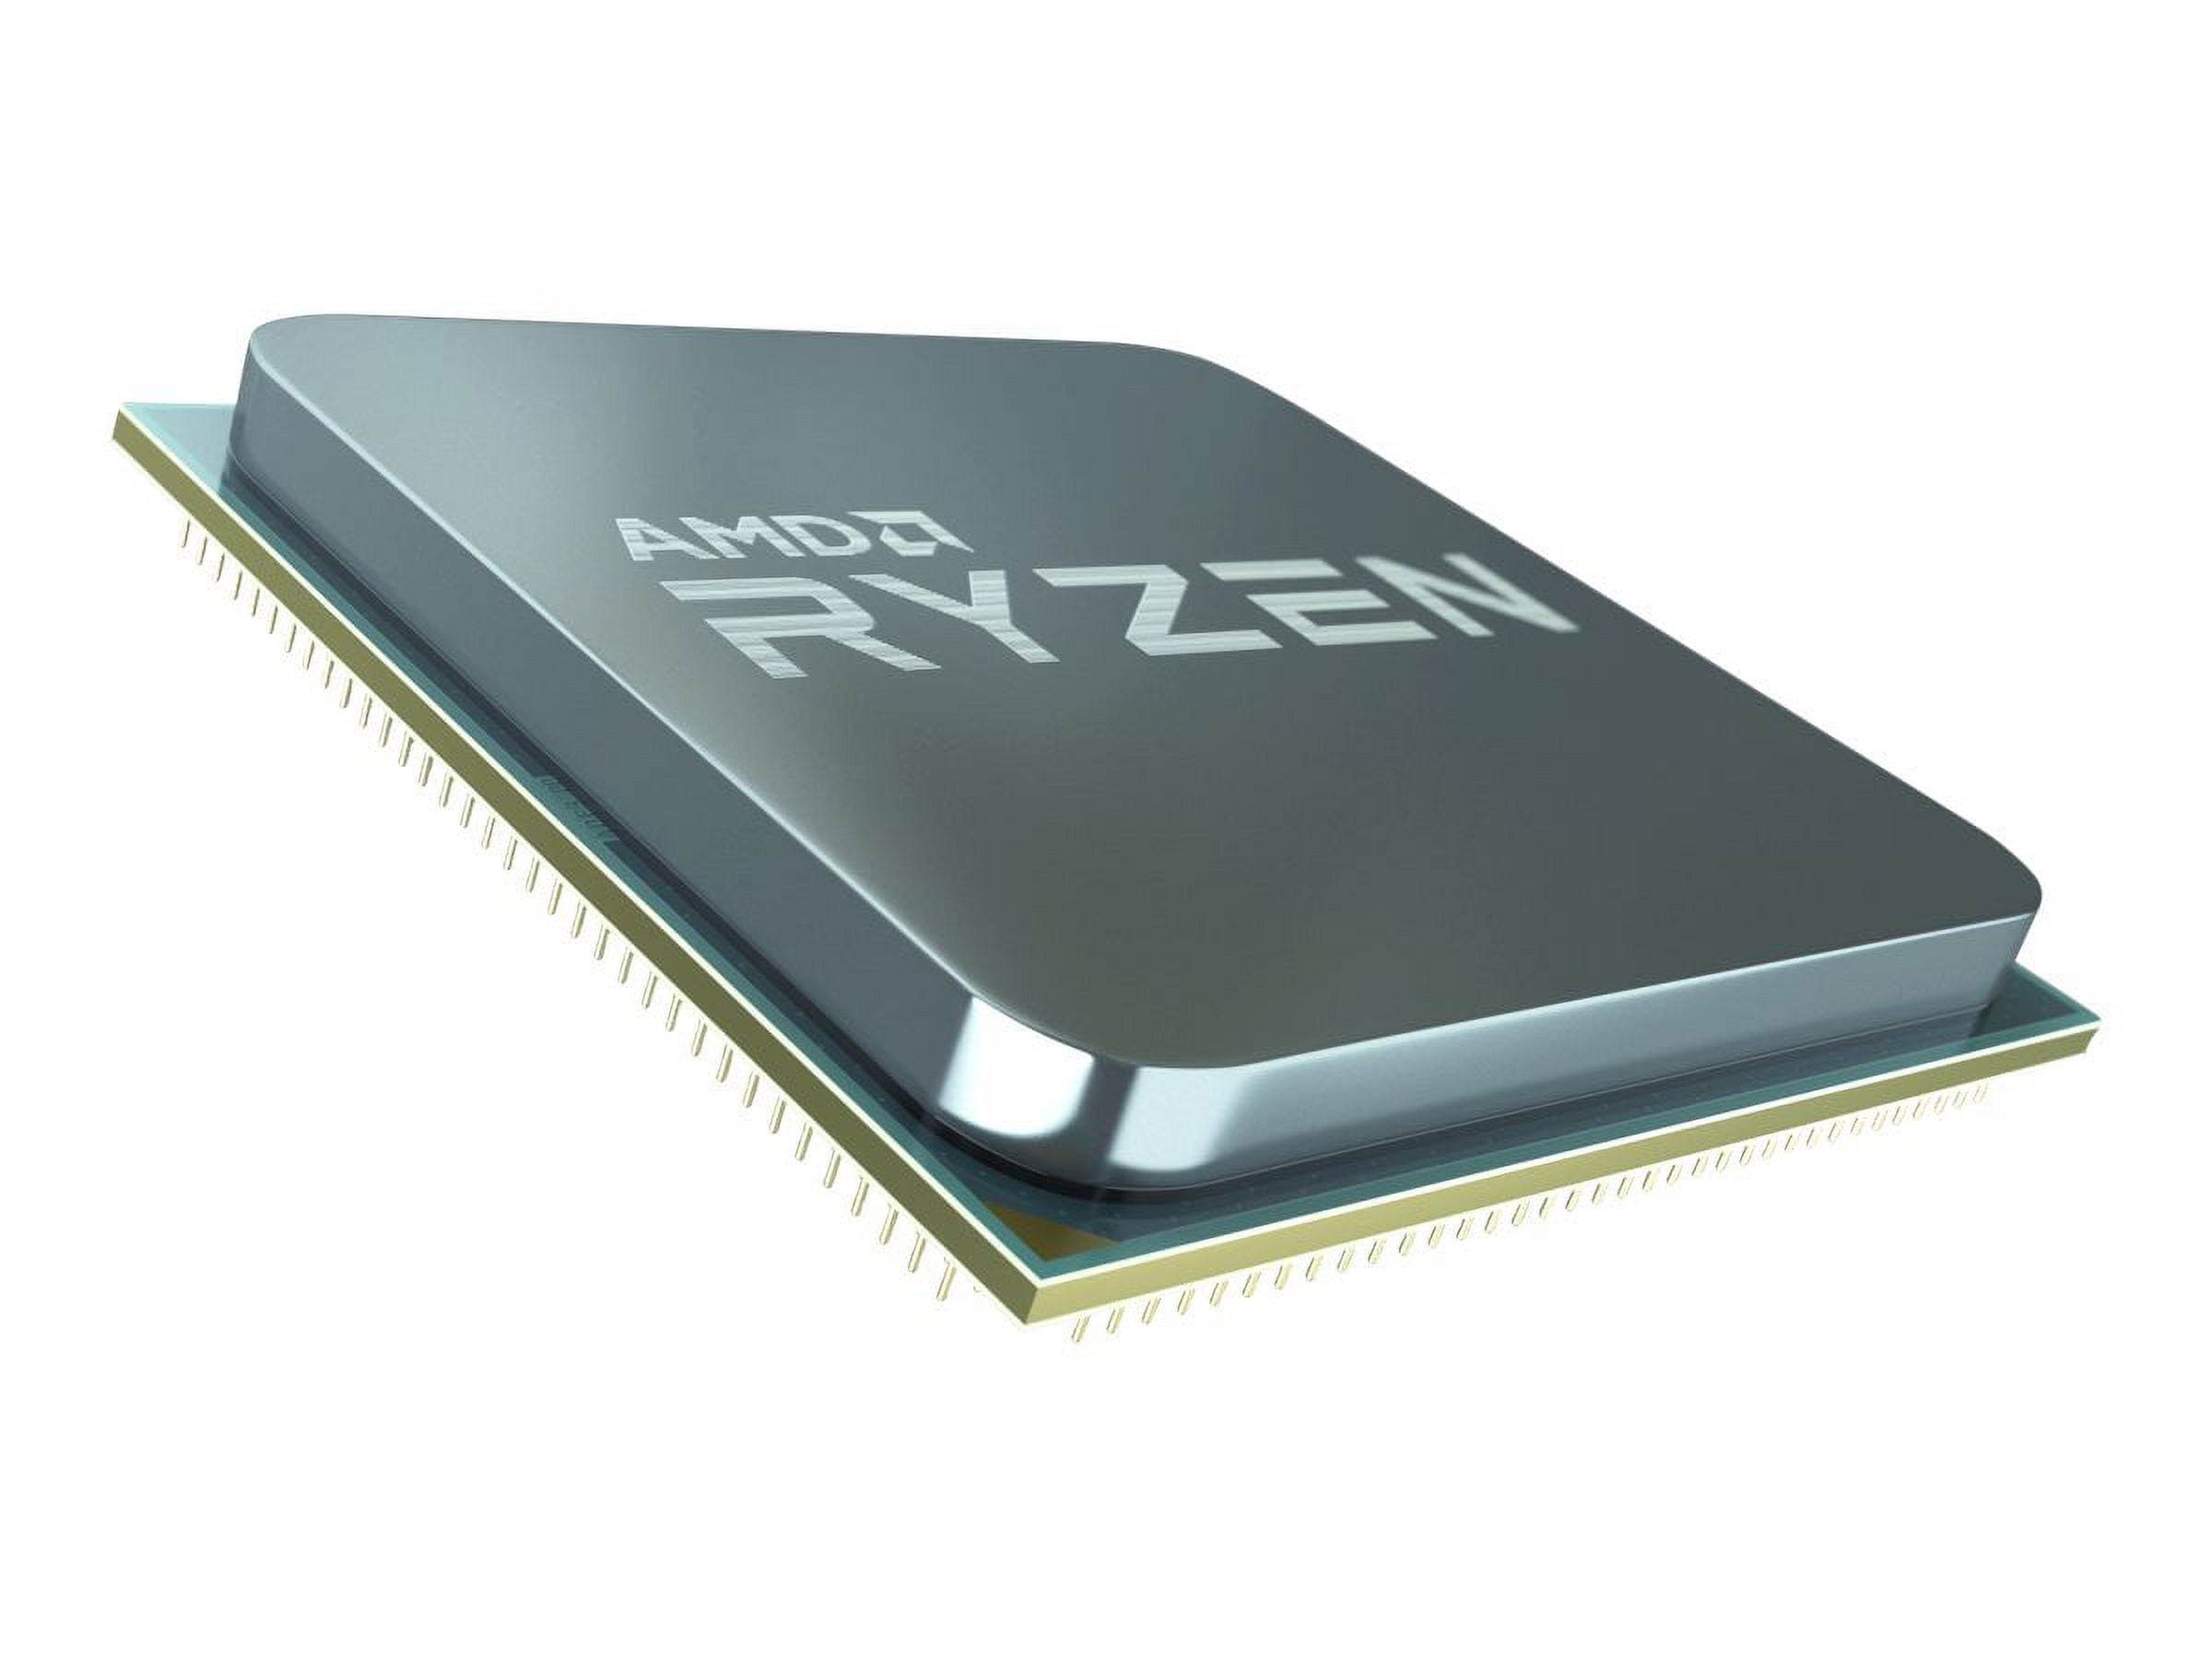 Buy AMD Ryzen 3 3200G Tray Processor with FAN Online